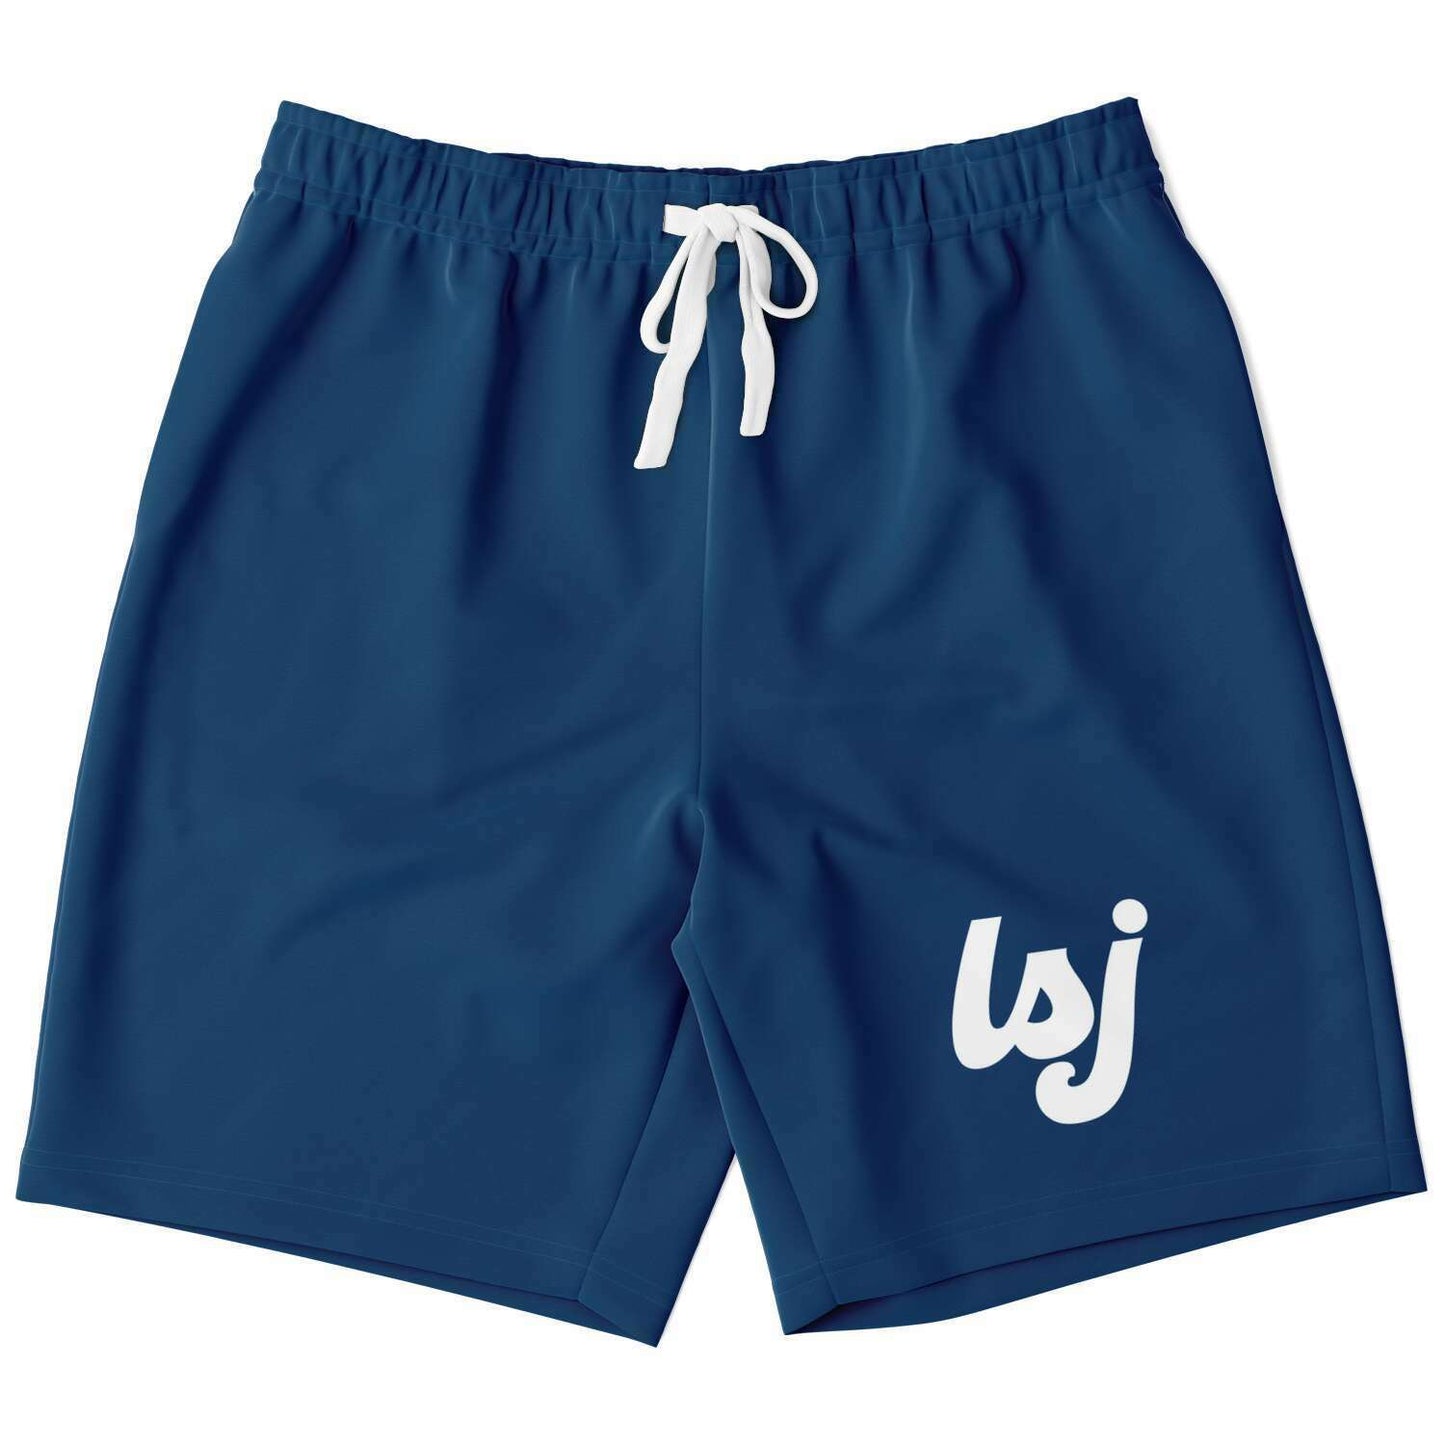 LSJ Brand (Cursive) Navy Blue Shorts